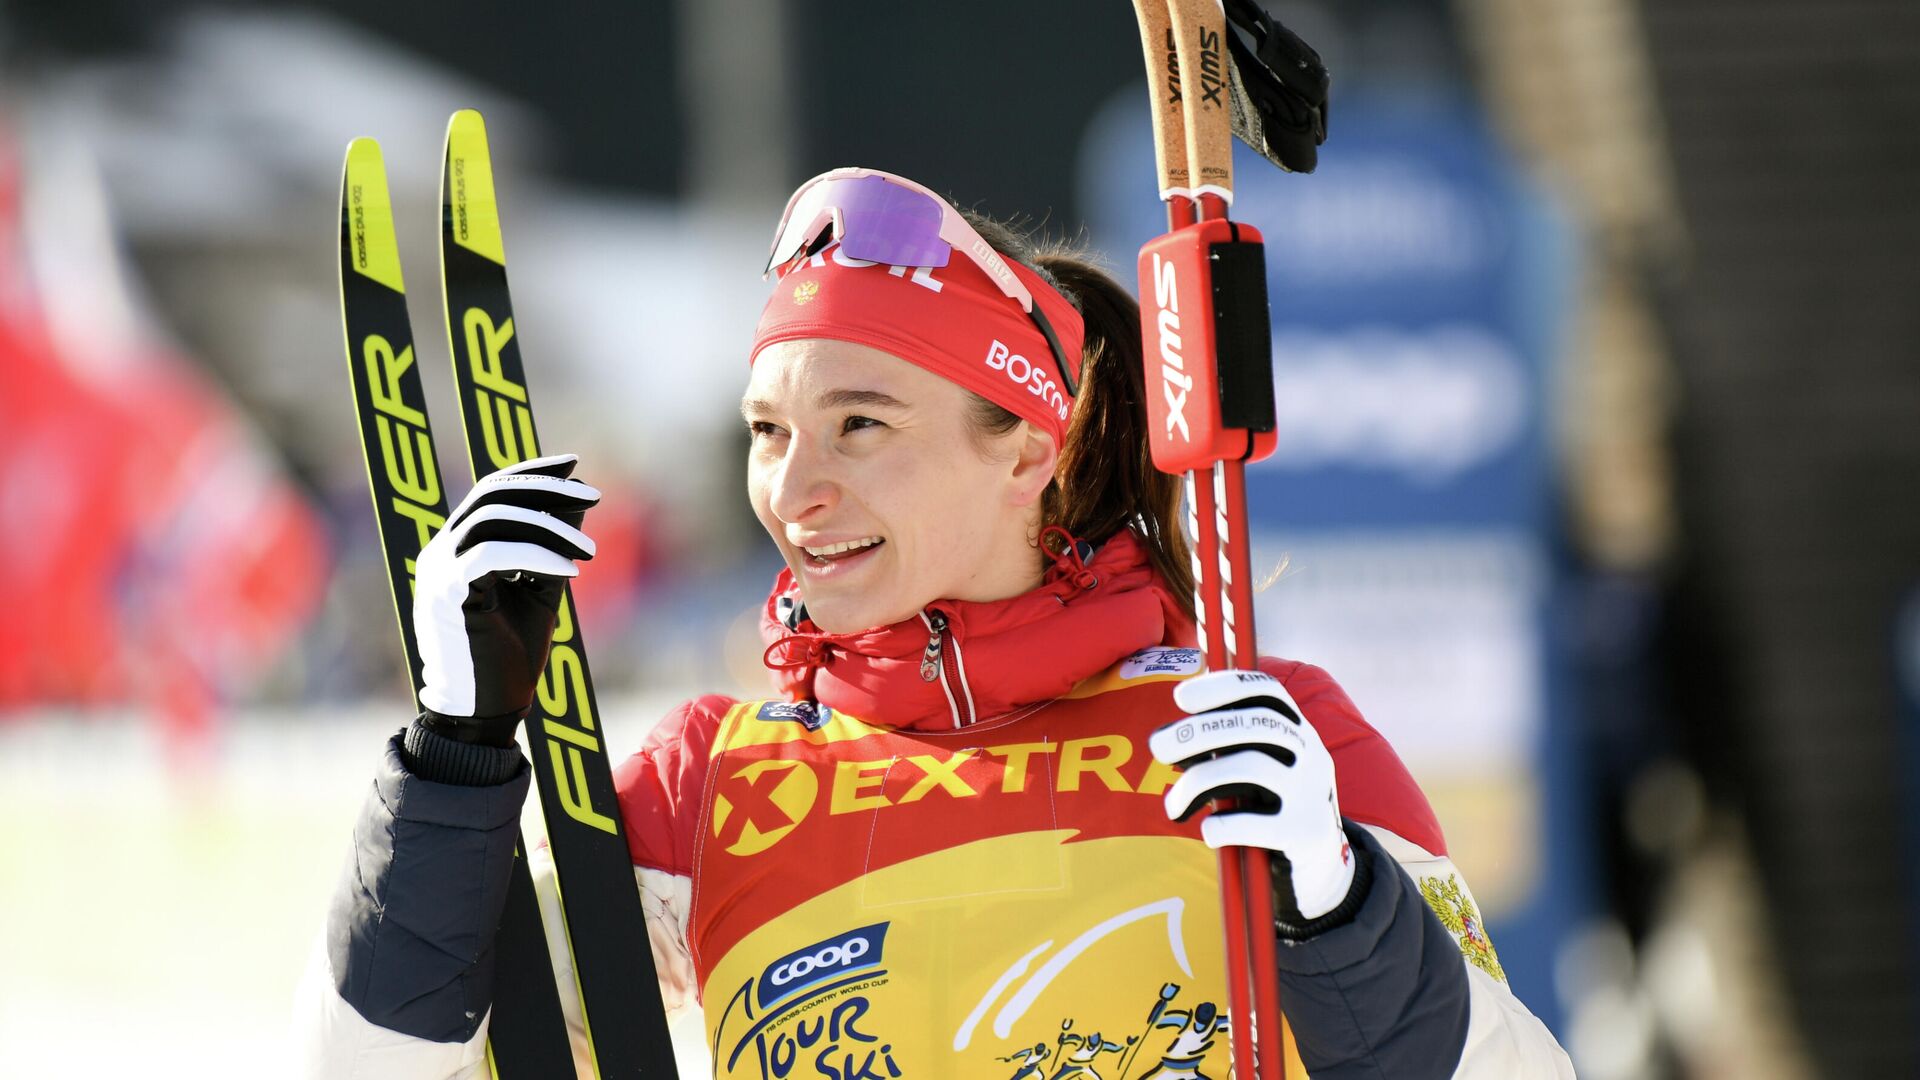 Лыжные гонки фосагро кубок россии финал женщины